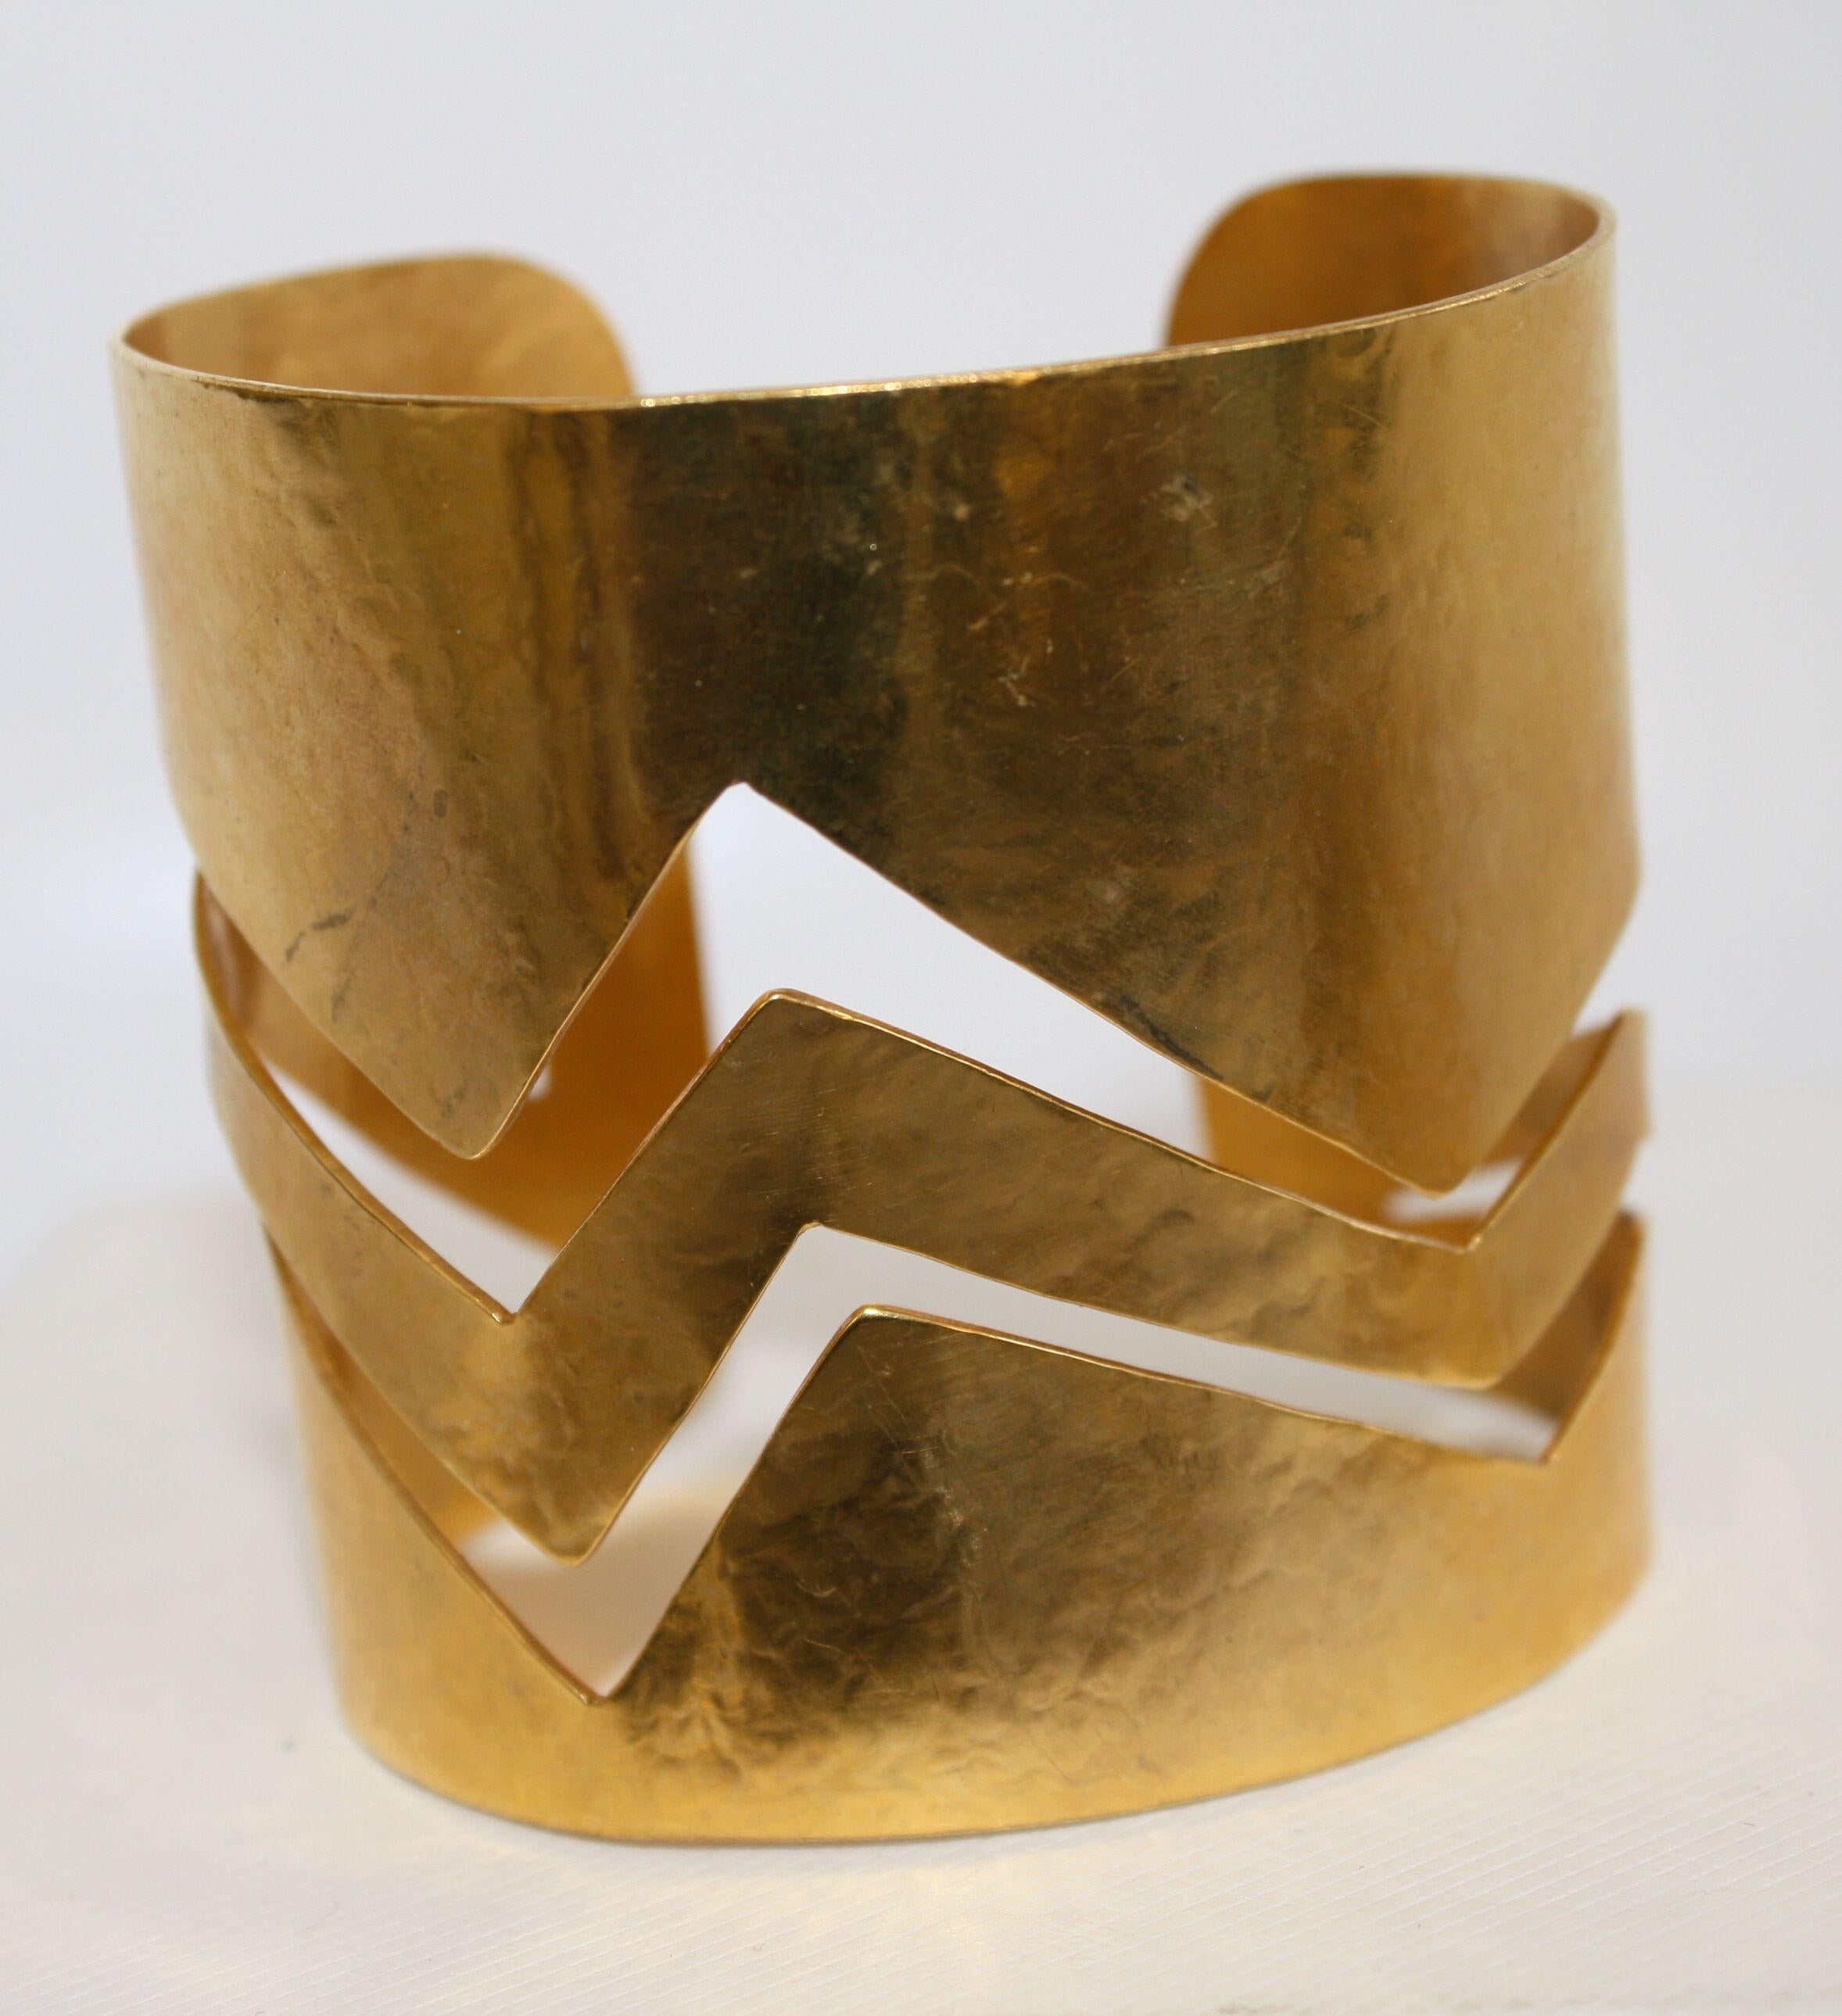 Manchette malléable en bronze doré avec motif en zigzag de Herve van der Straeten. Ce designer ne crée plus de bijoux, ce qui fait de toutes les pièces restantes des objets de collection !